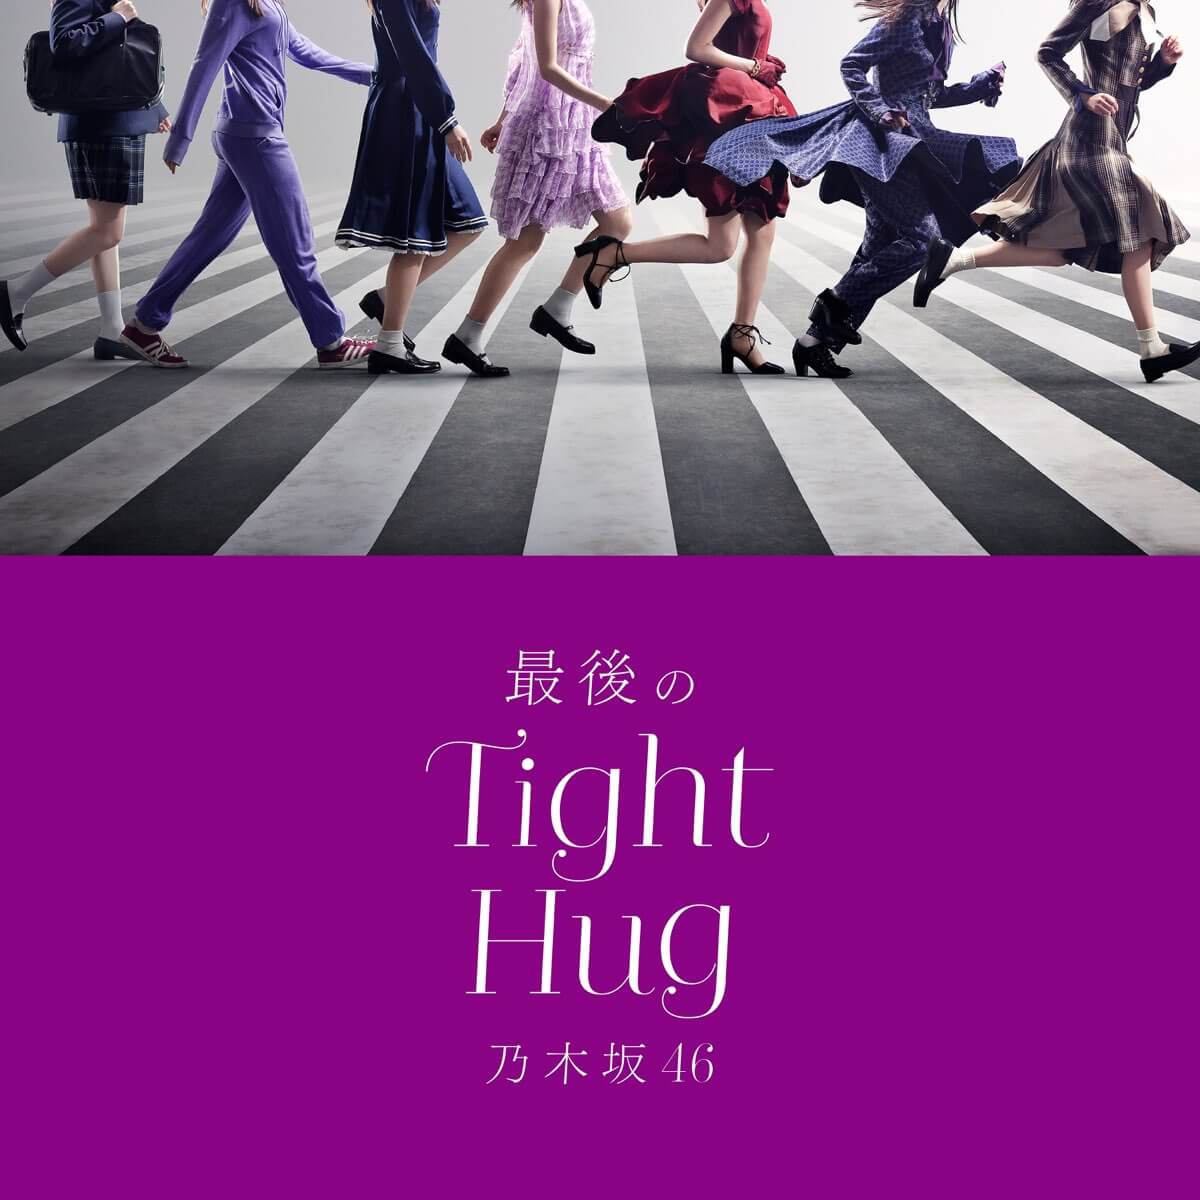 乃木坂46 - 最後のTight Hug